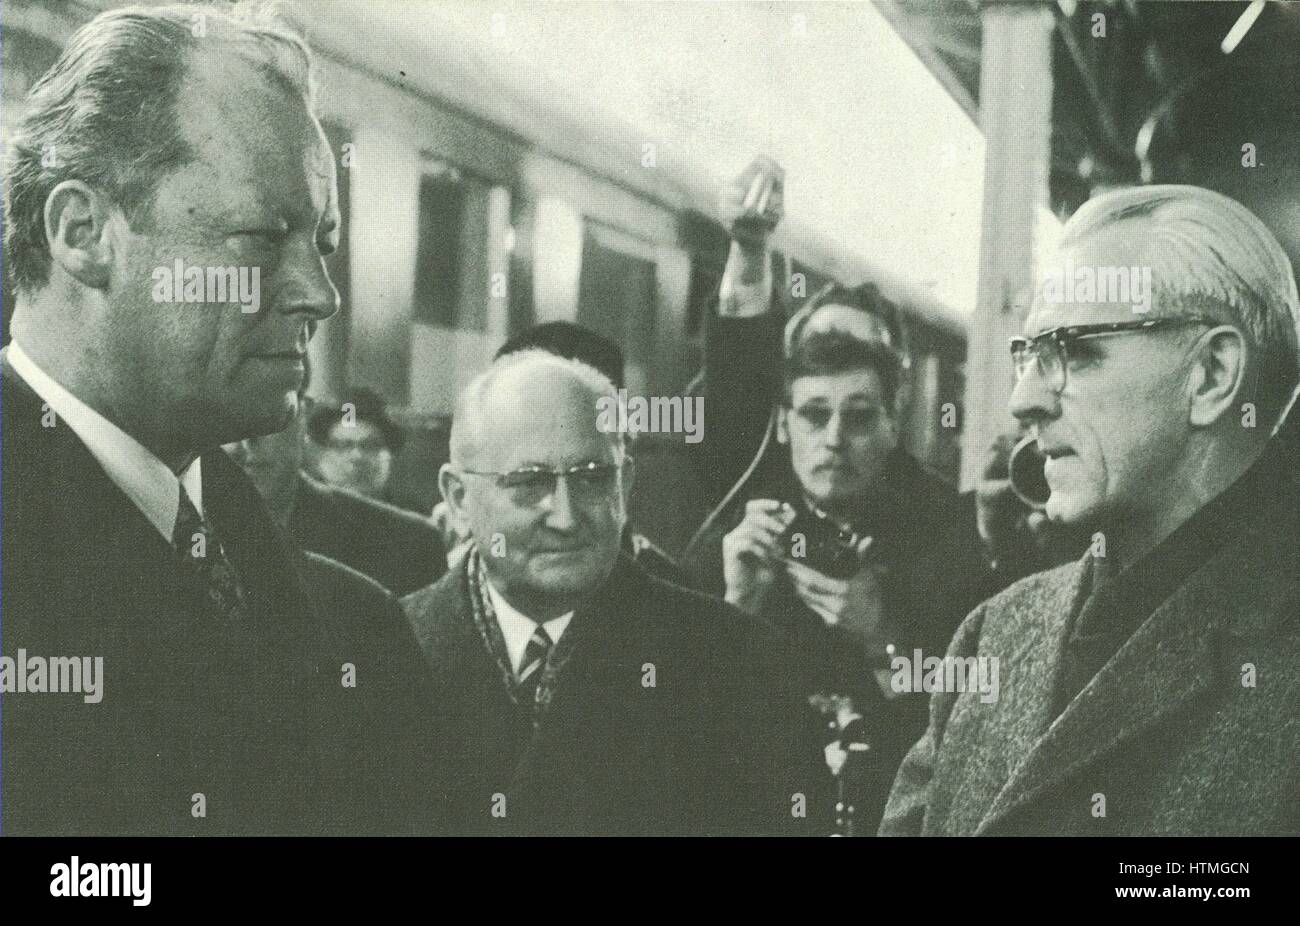 Willy Brandt (1913-1992), Chancelier de l'Allemagne de l'Ouest 1969-1974, et leader du Parti Social-démocrate d'Allemagne (SPD) 1964-1987. réunion avec son homologue est-allemand, Premier Ministre Willi Stoph (1914-1999). La réunion a eu lieu en période de détente au cours de 1970. Banque D'Images